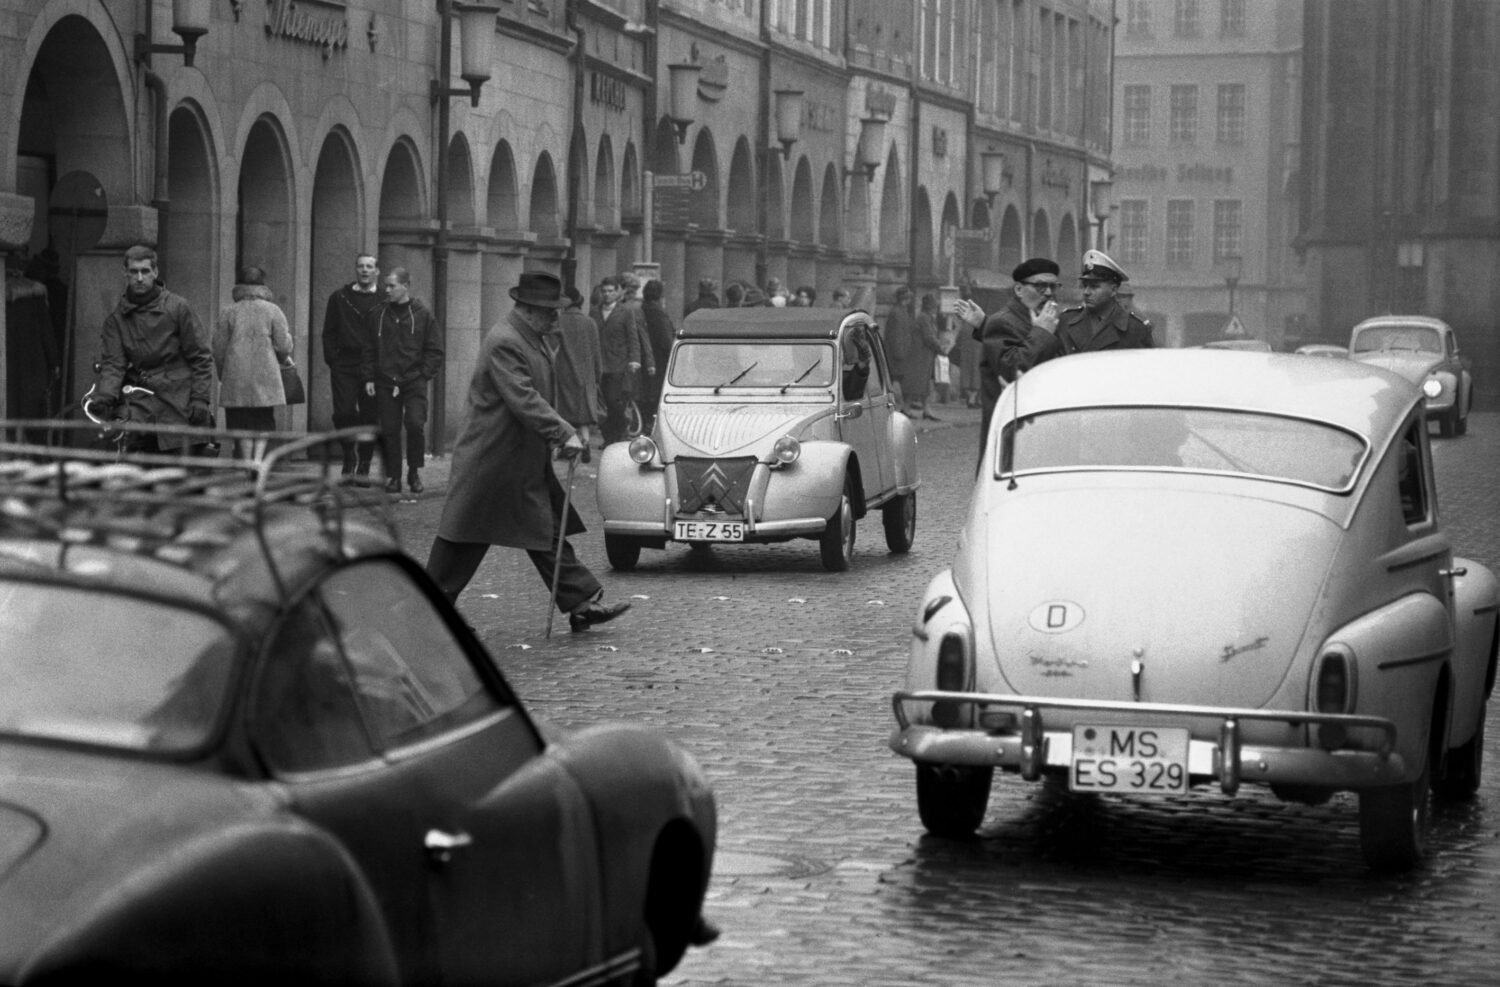 Prinzipalmarkt 1962: Viele Autos, ein hastender Fußgänger und ein Schutzpolizist
